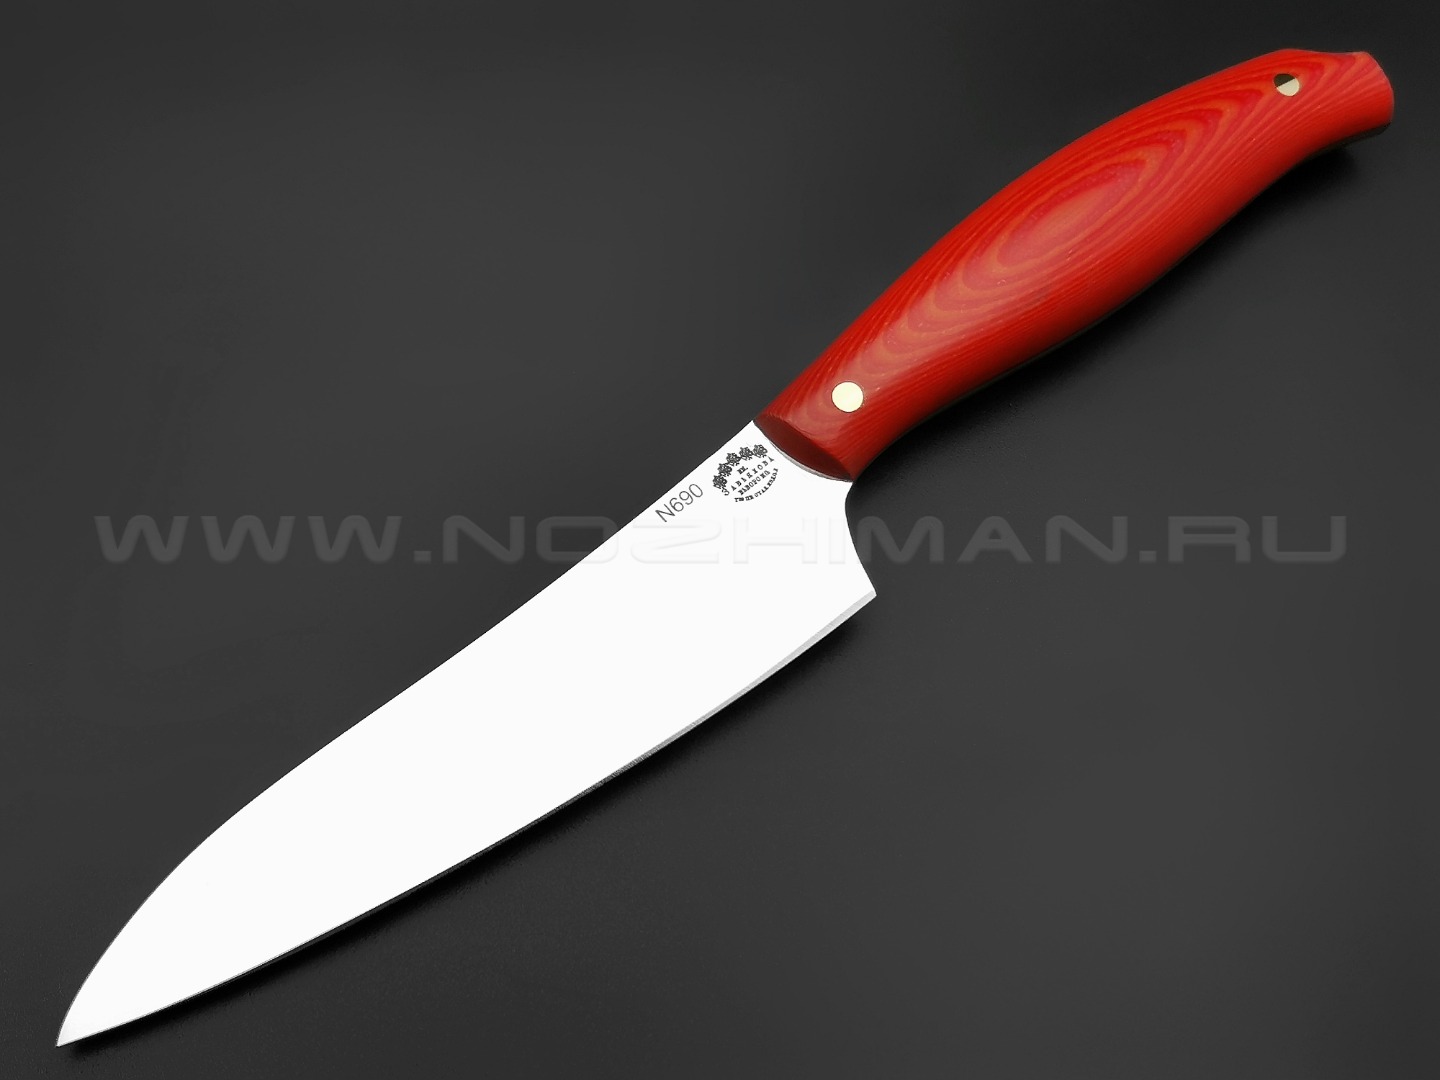 Кухонный нож Овощной №2, сталь N690, рукоять G10 red & orange (Товарищество Завьялова)